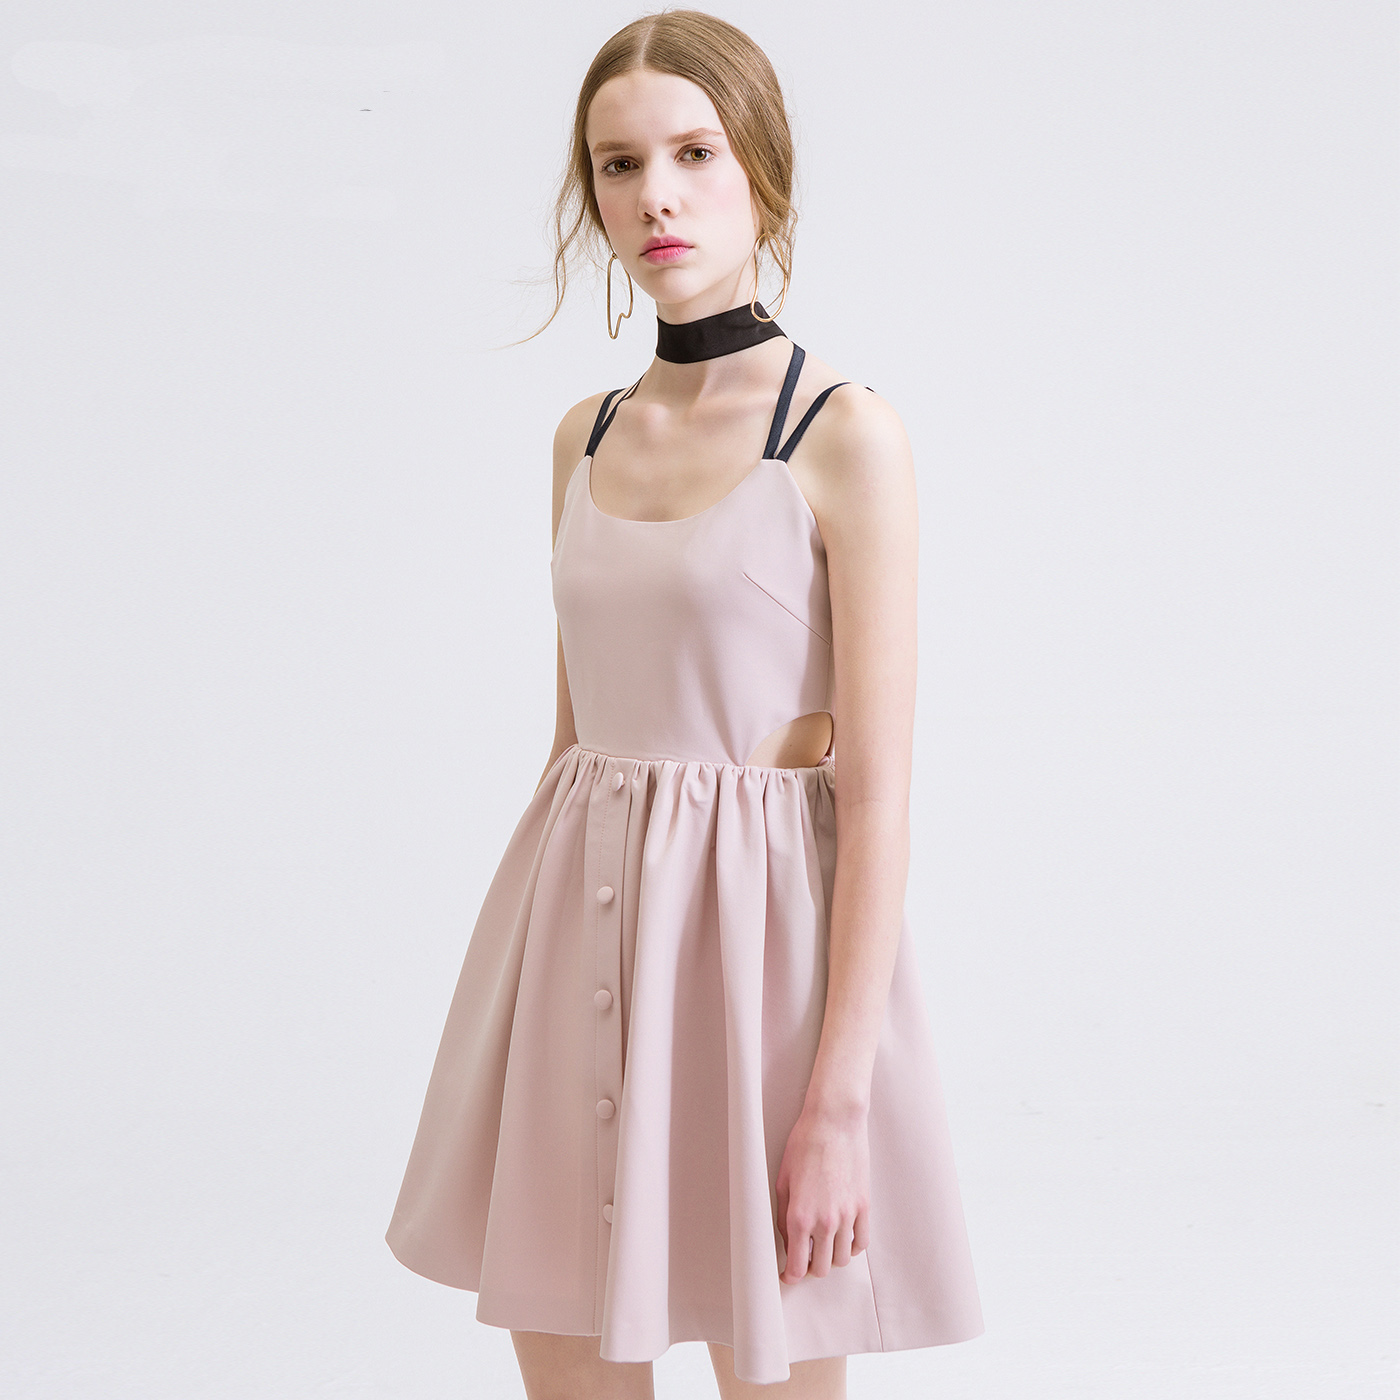 夏装新款品牌女装加工 粉色吊带无袖连衣裙露肩礼服修身裙子